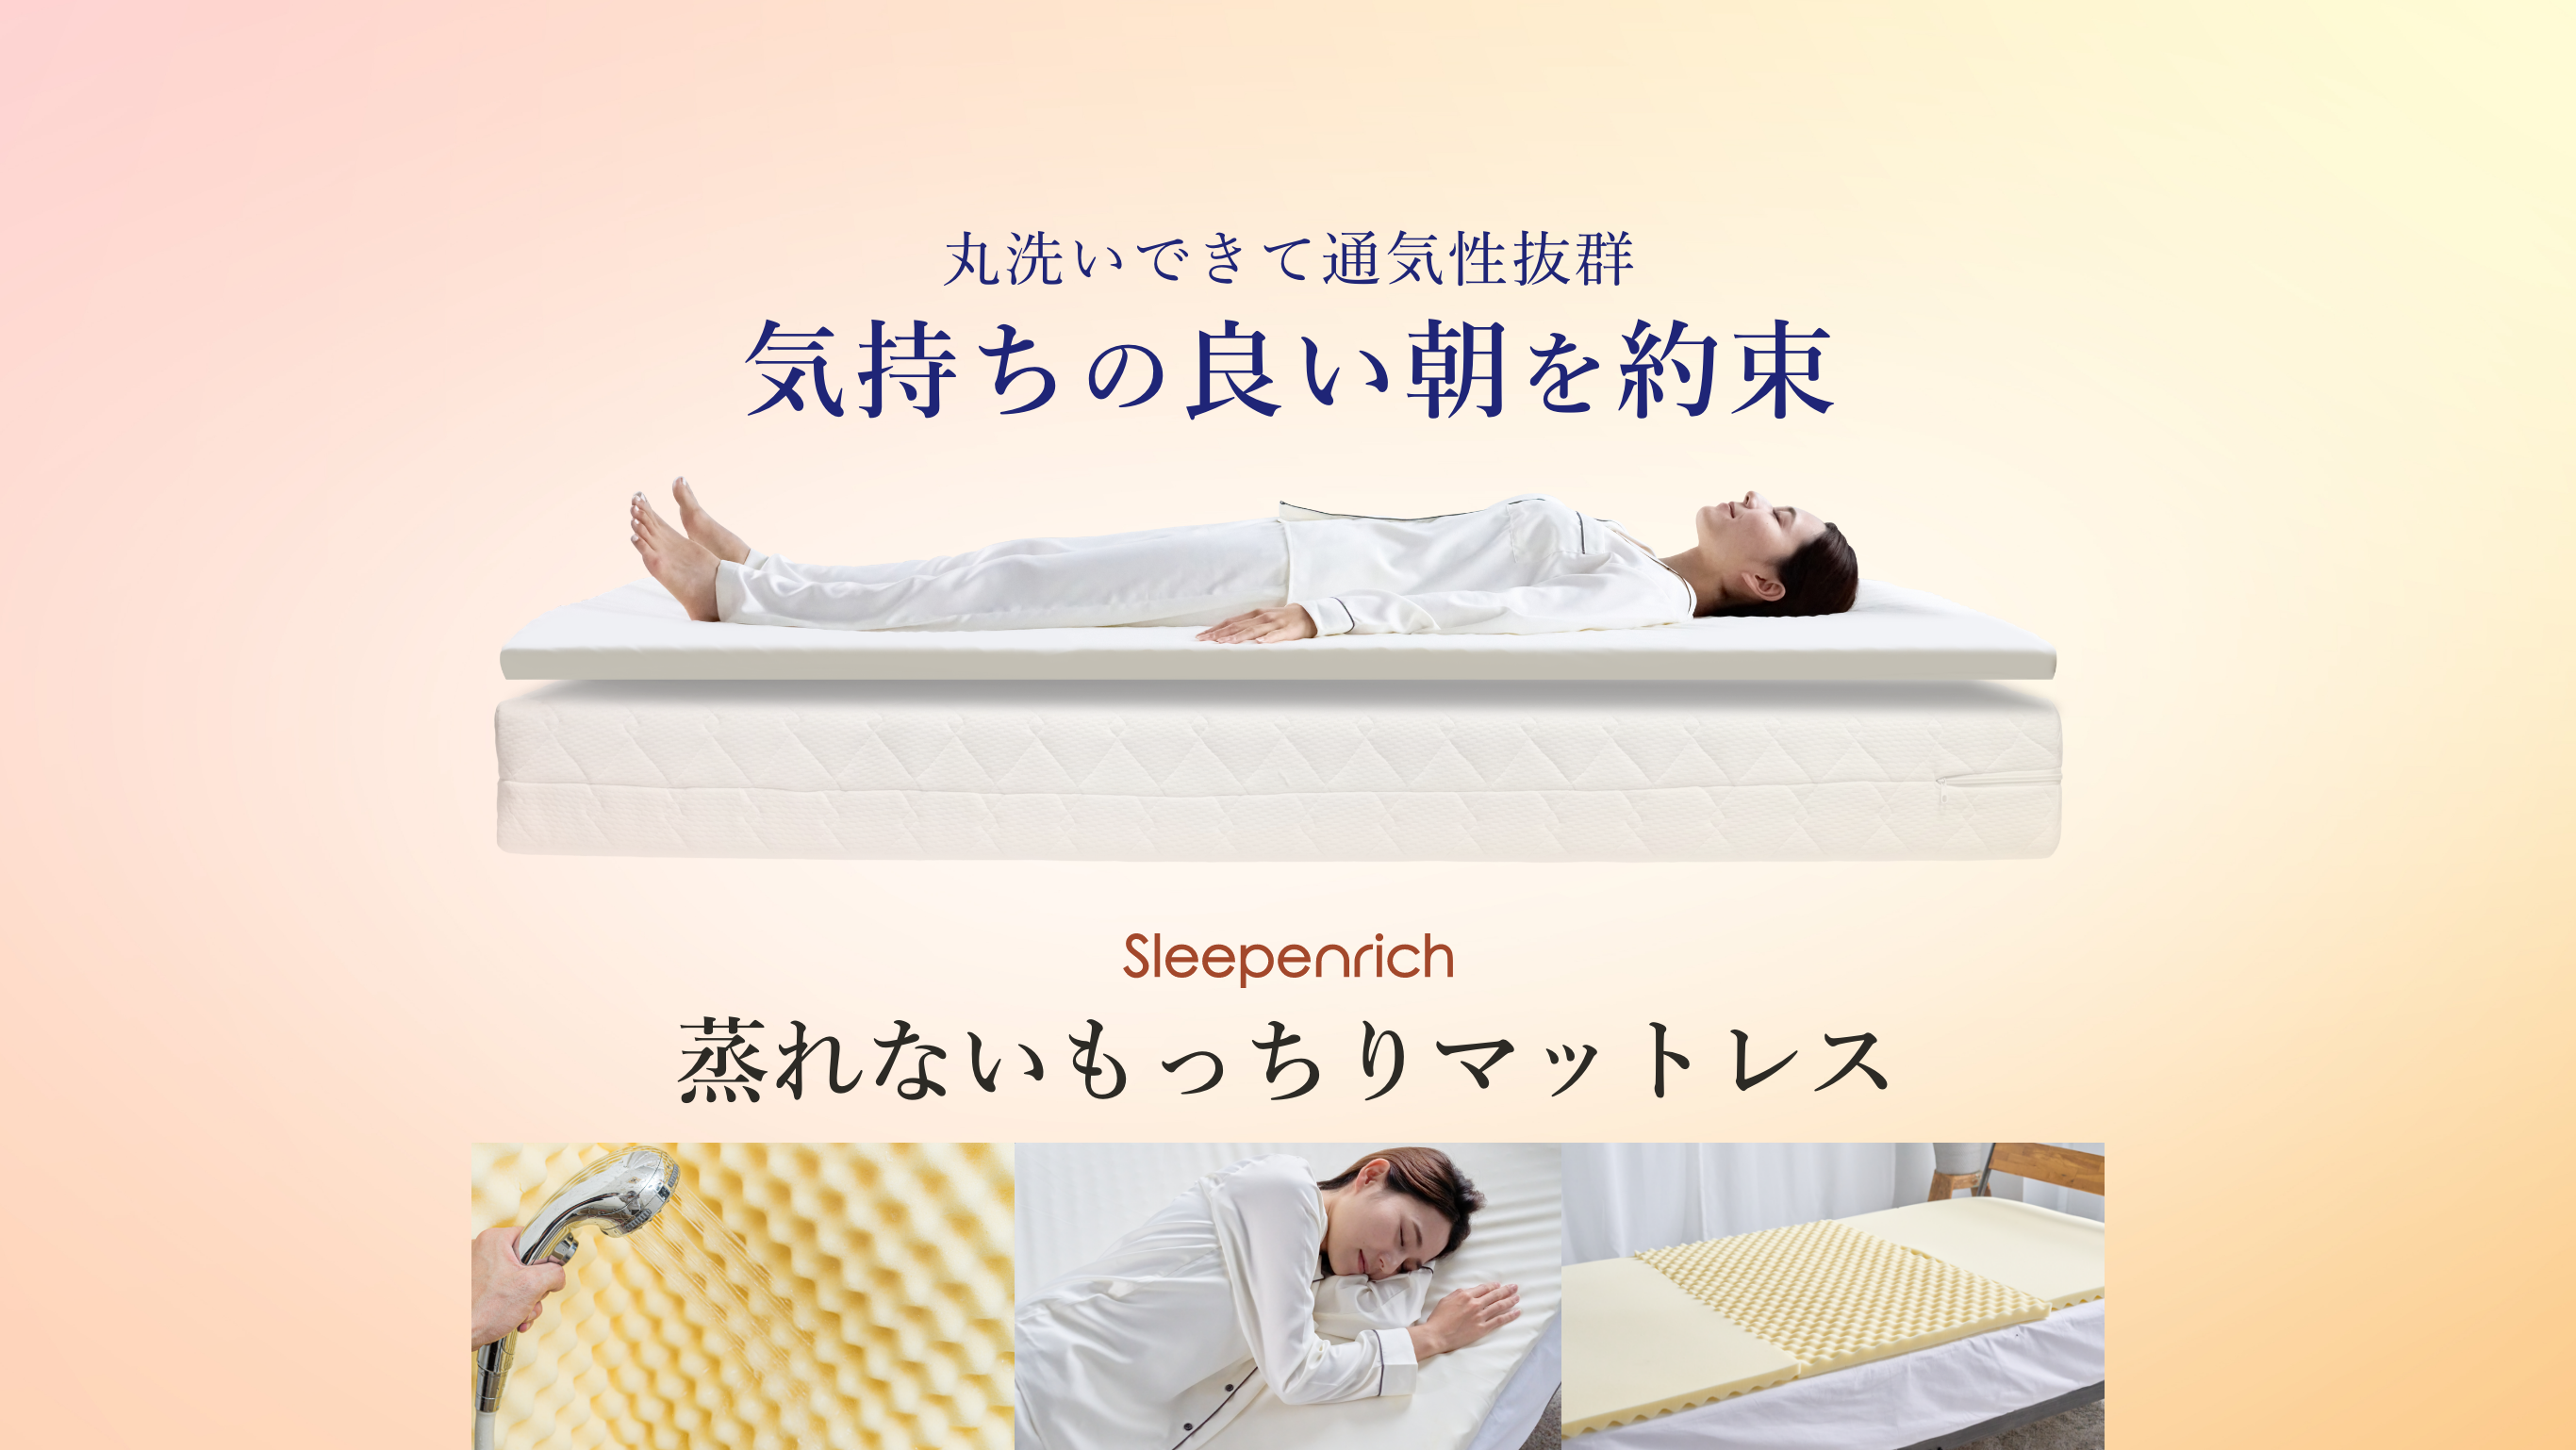 科学する寝具 スリープエンリッチ蒸れないもっちりマットレス